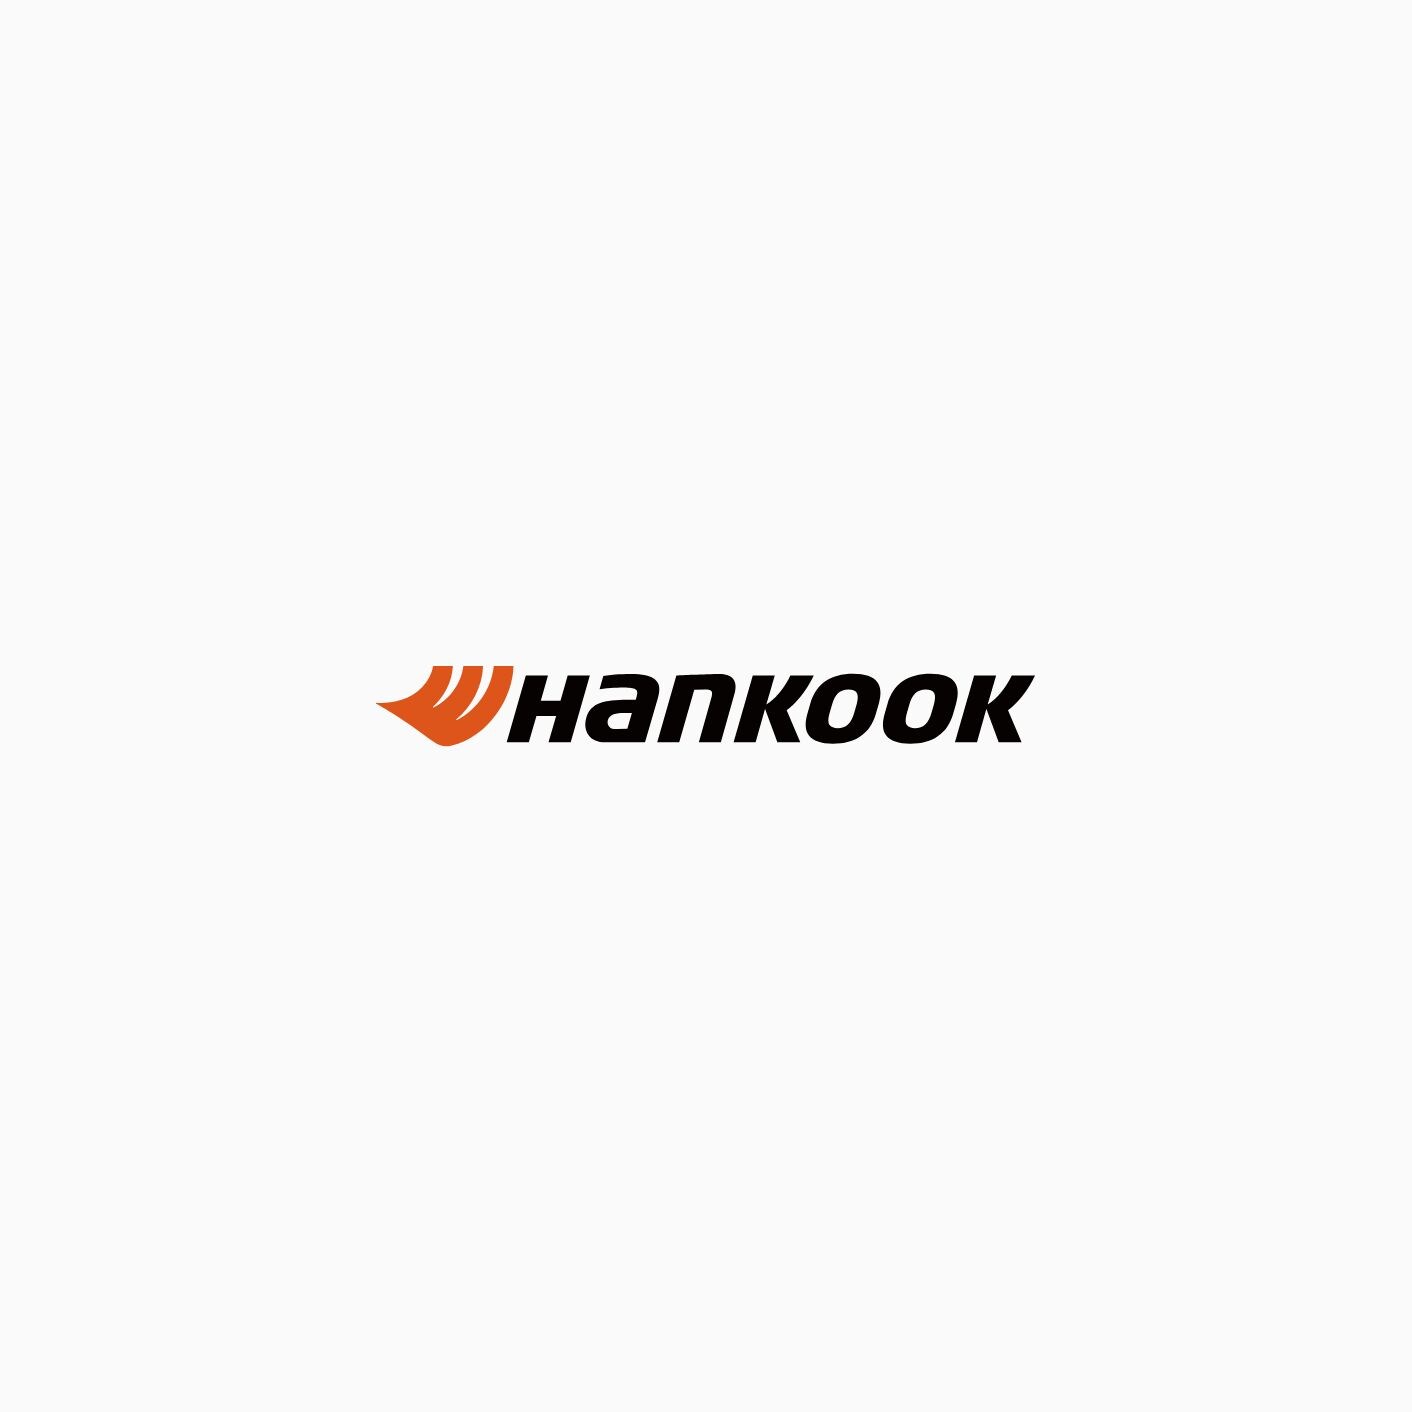 Hankook Symphonie de la vitesse 2021